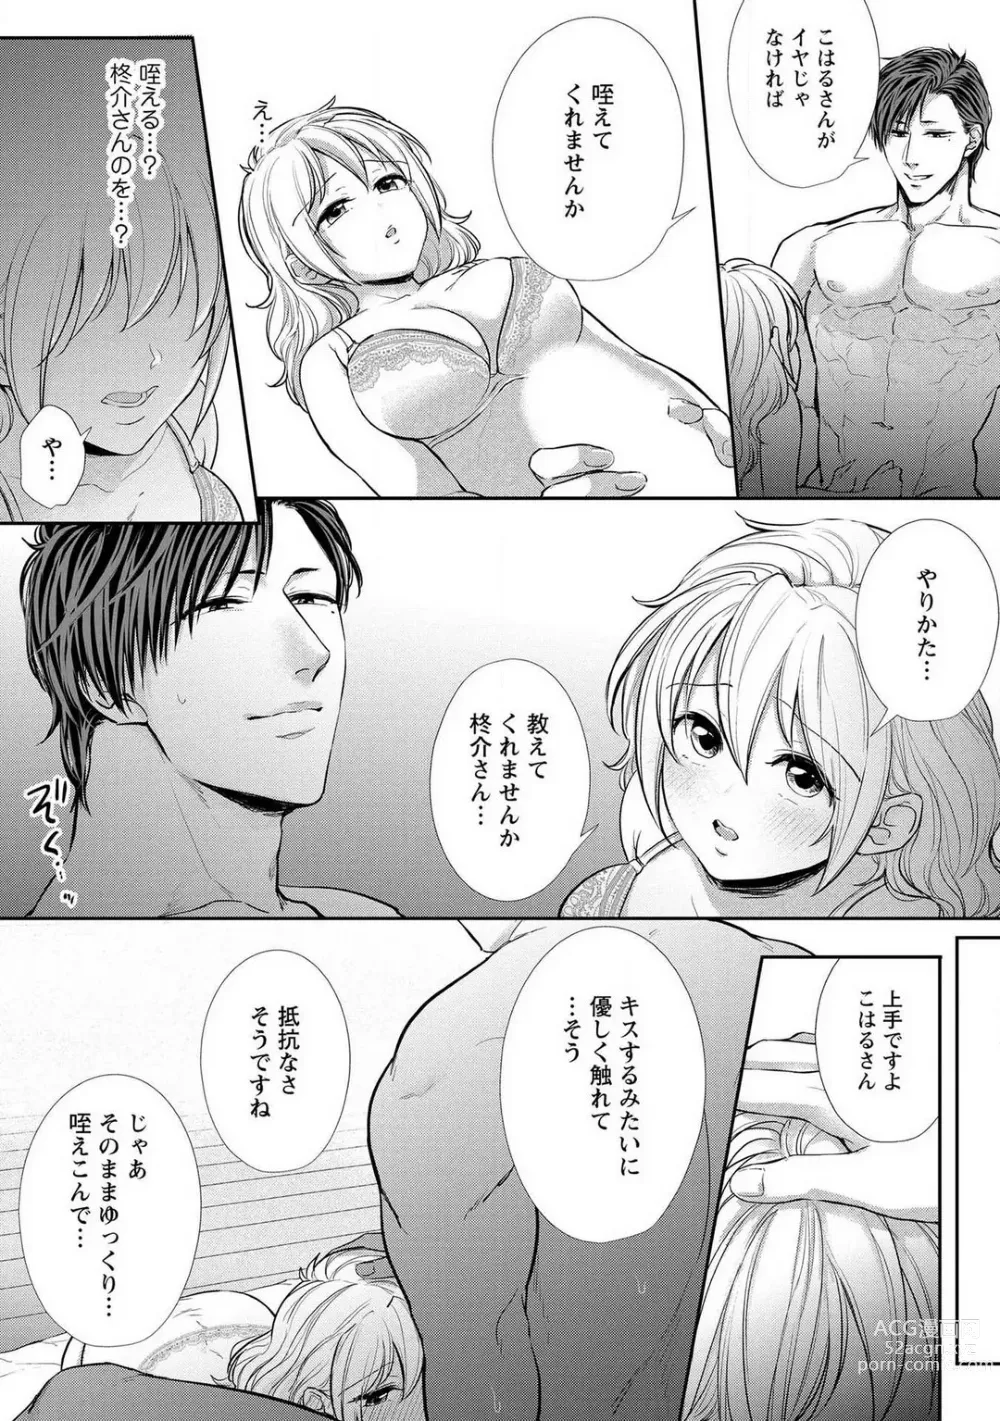 Page 145 of manga Pyuuru